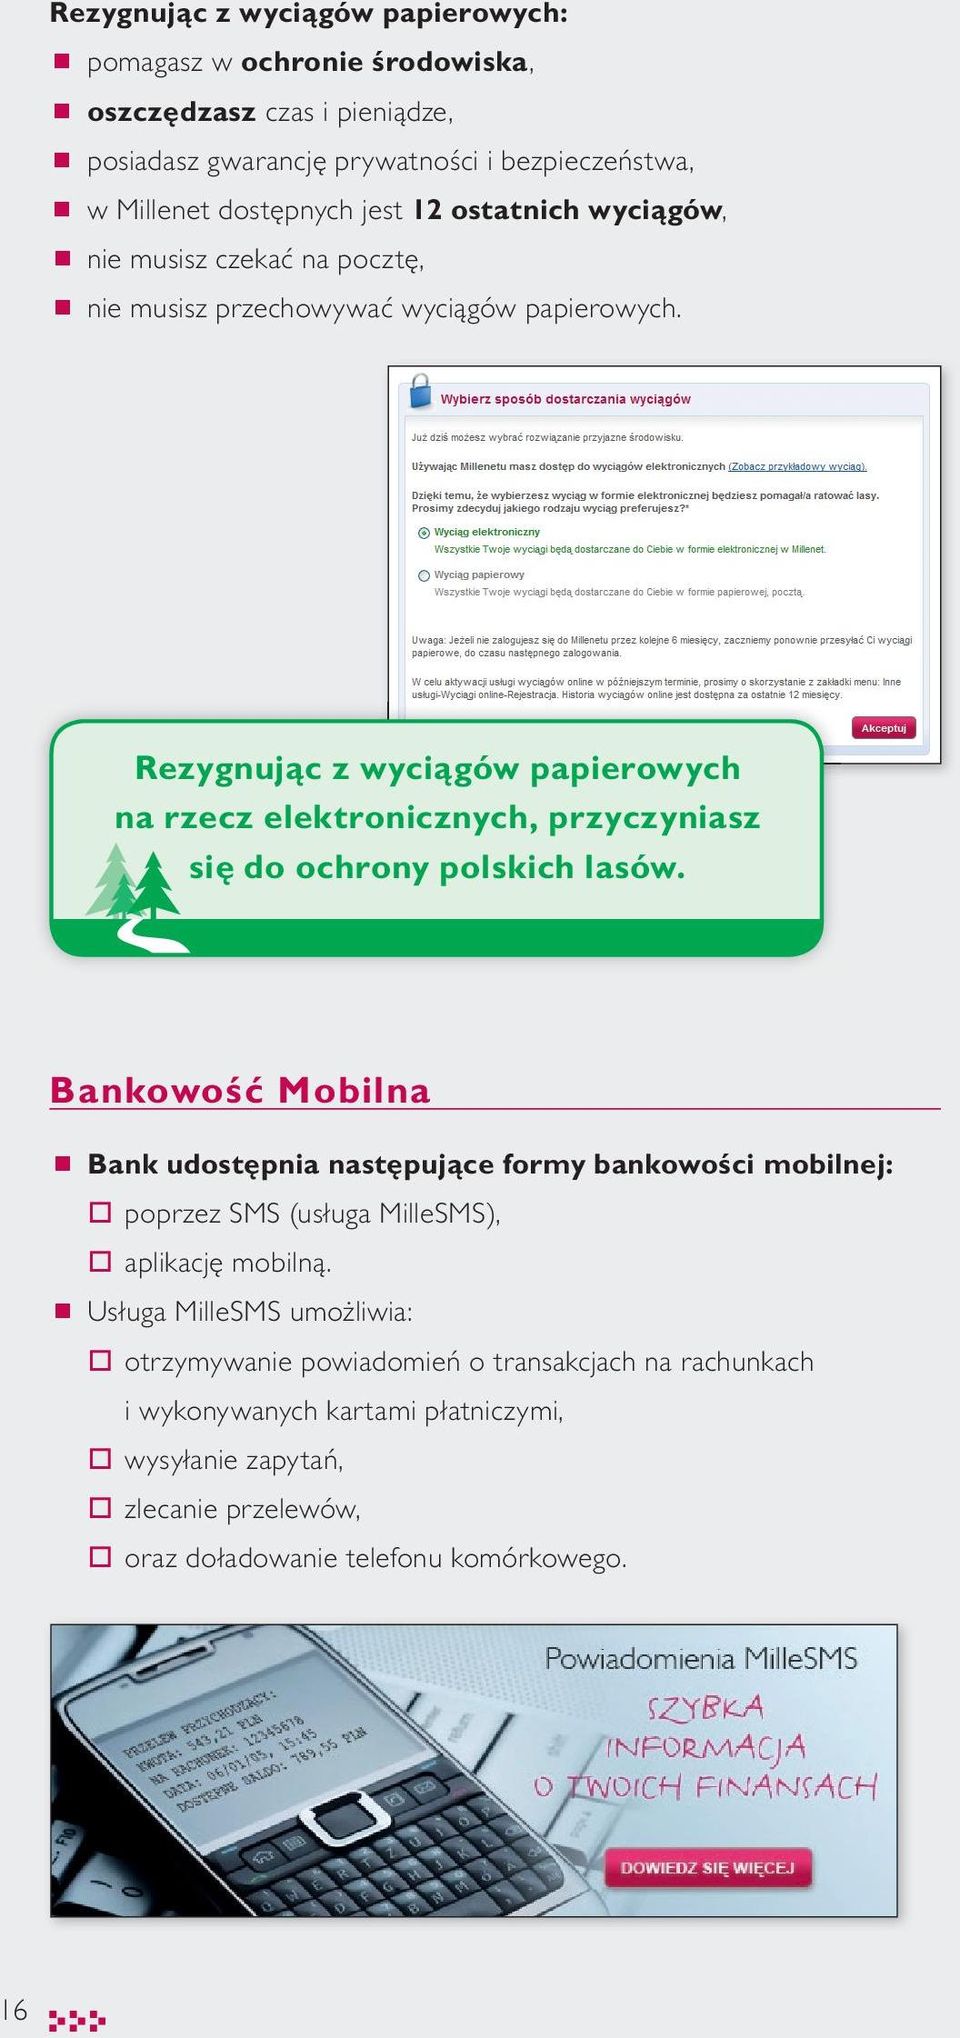 Rezygnując z wyciągów papierowych na rzecz elektronicznych, przyczyniasz się do ochrony polskich lasów.